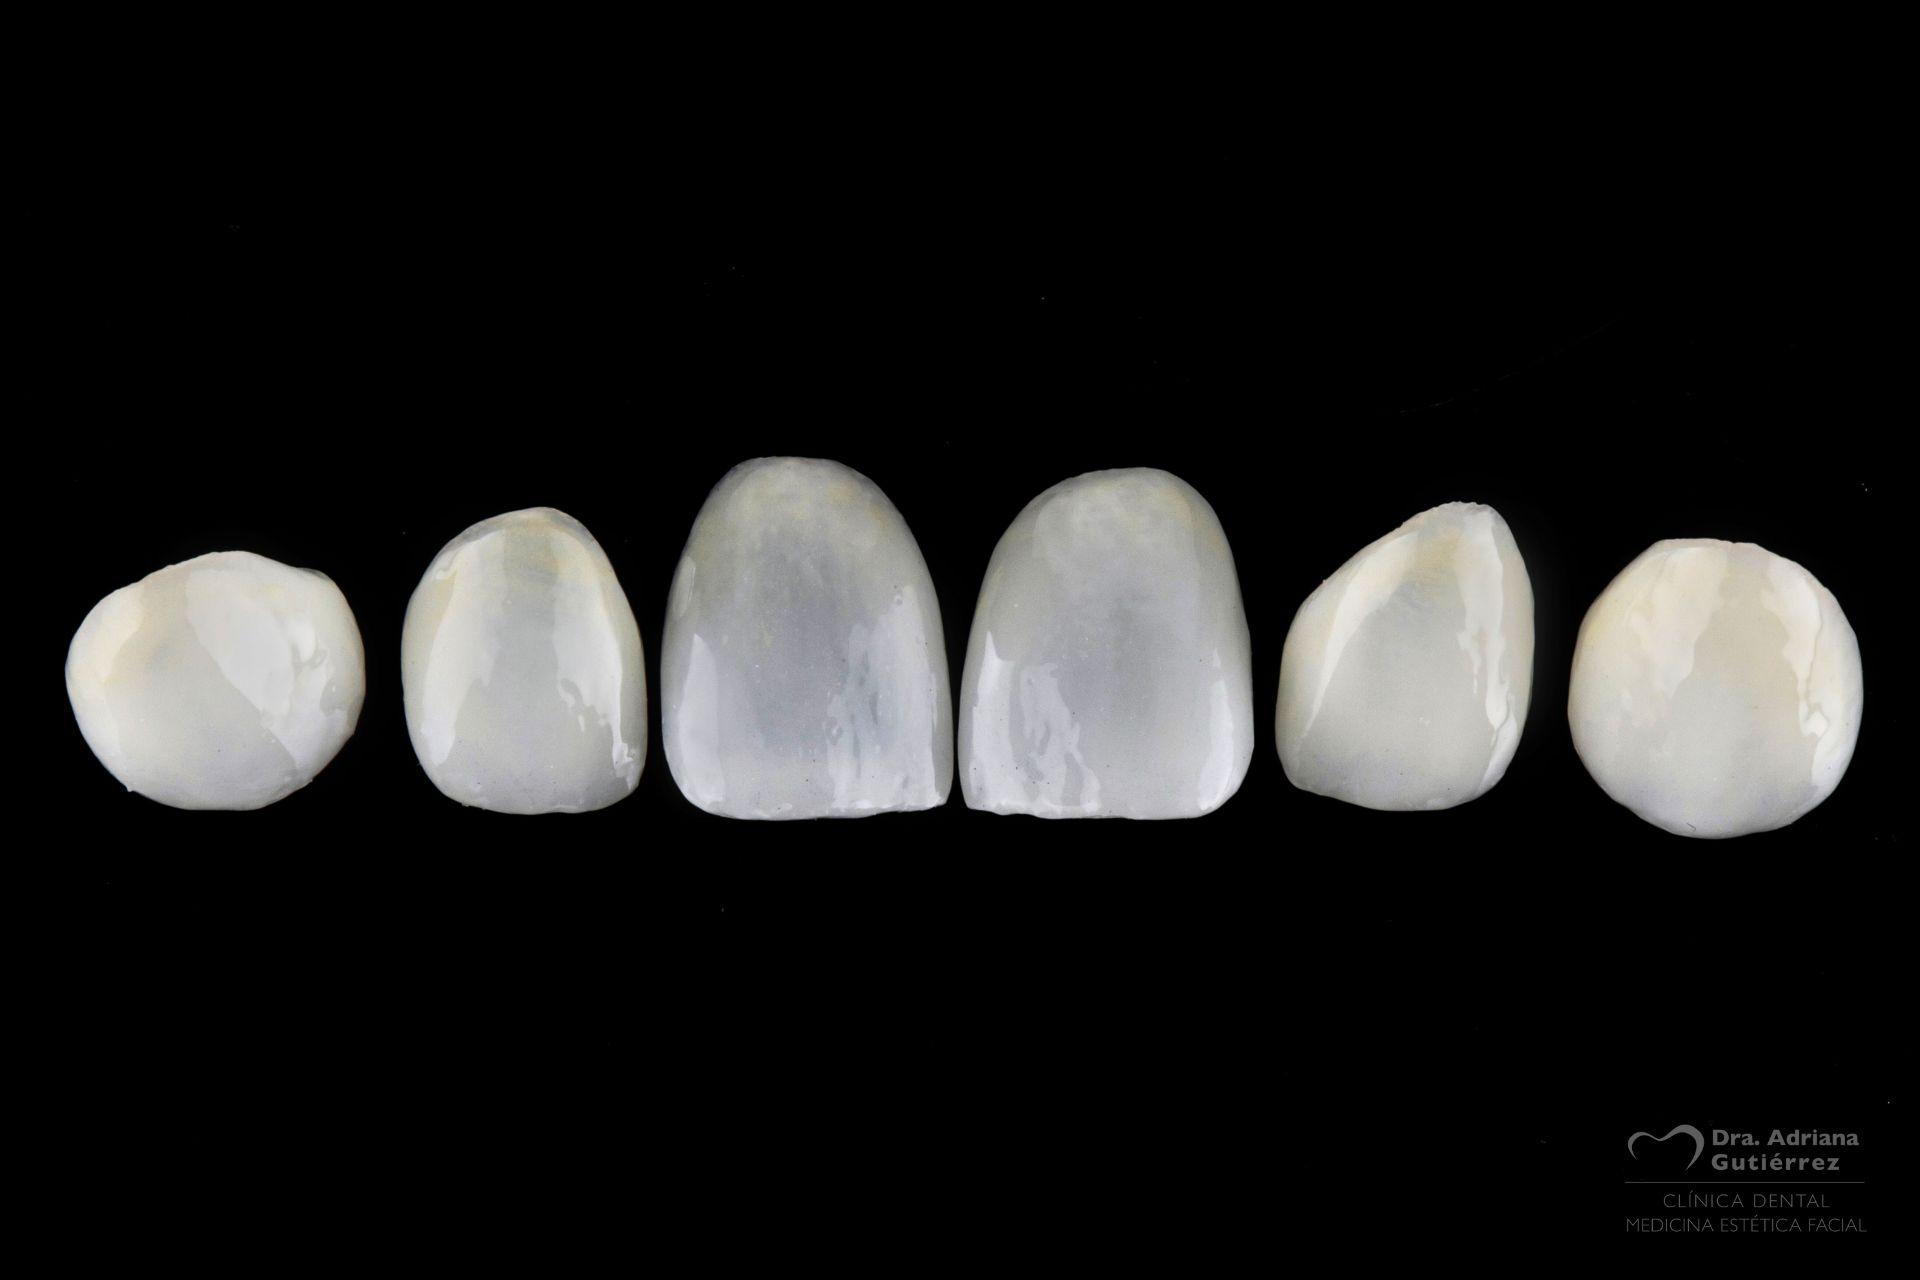 Tipos de carillas dentales, ventajas, cuidados y mantenimiento